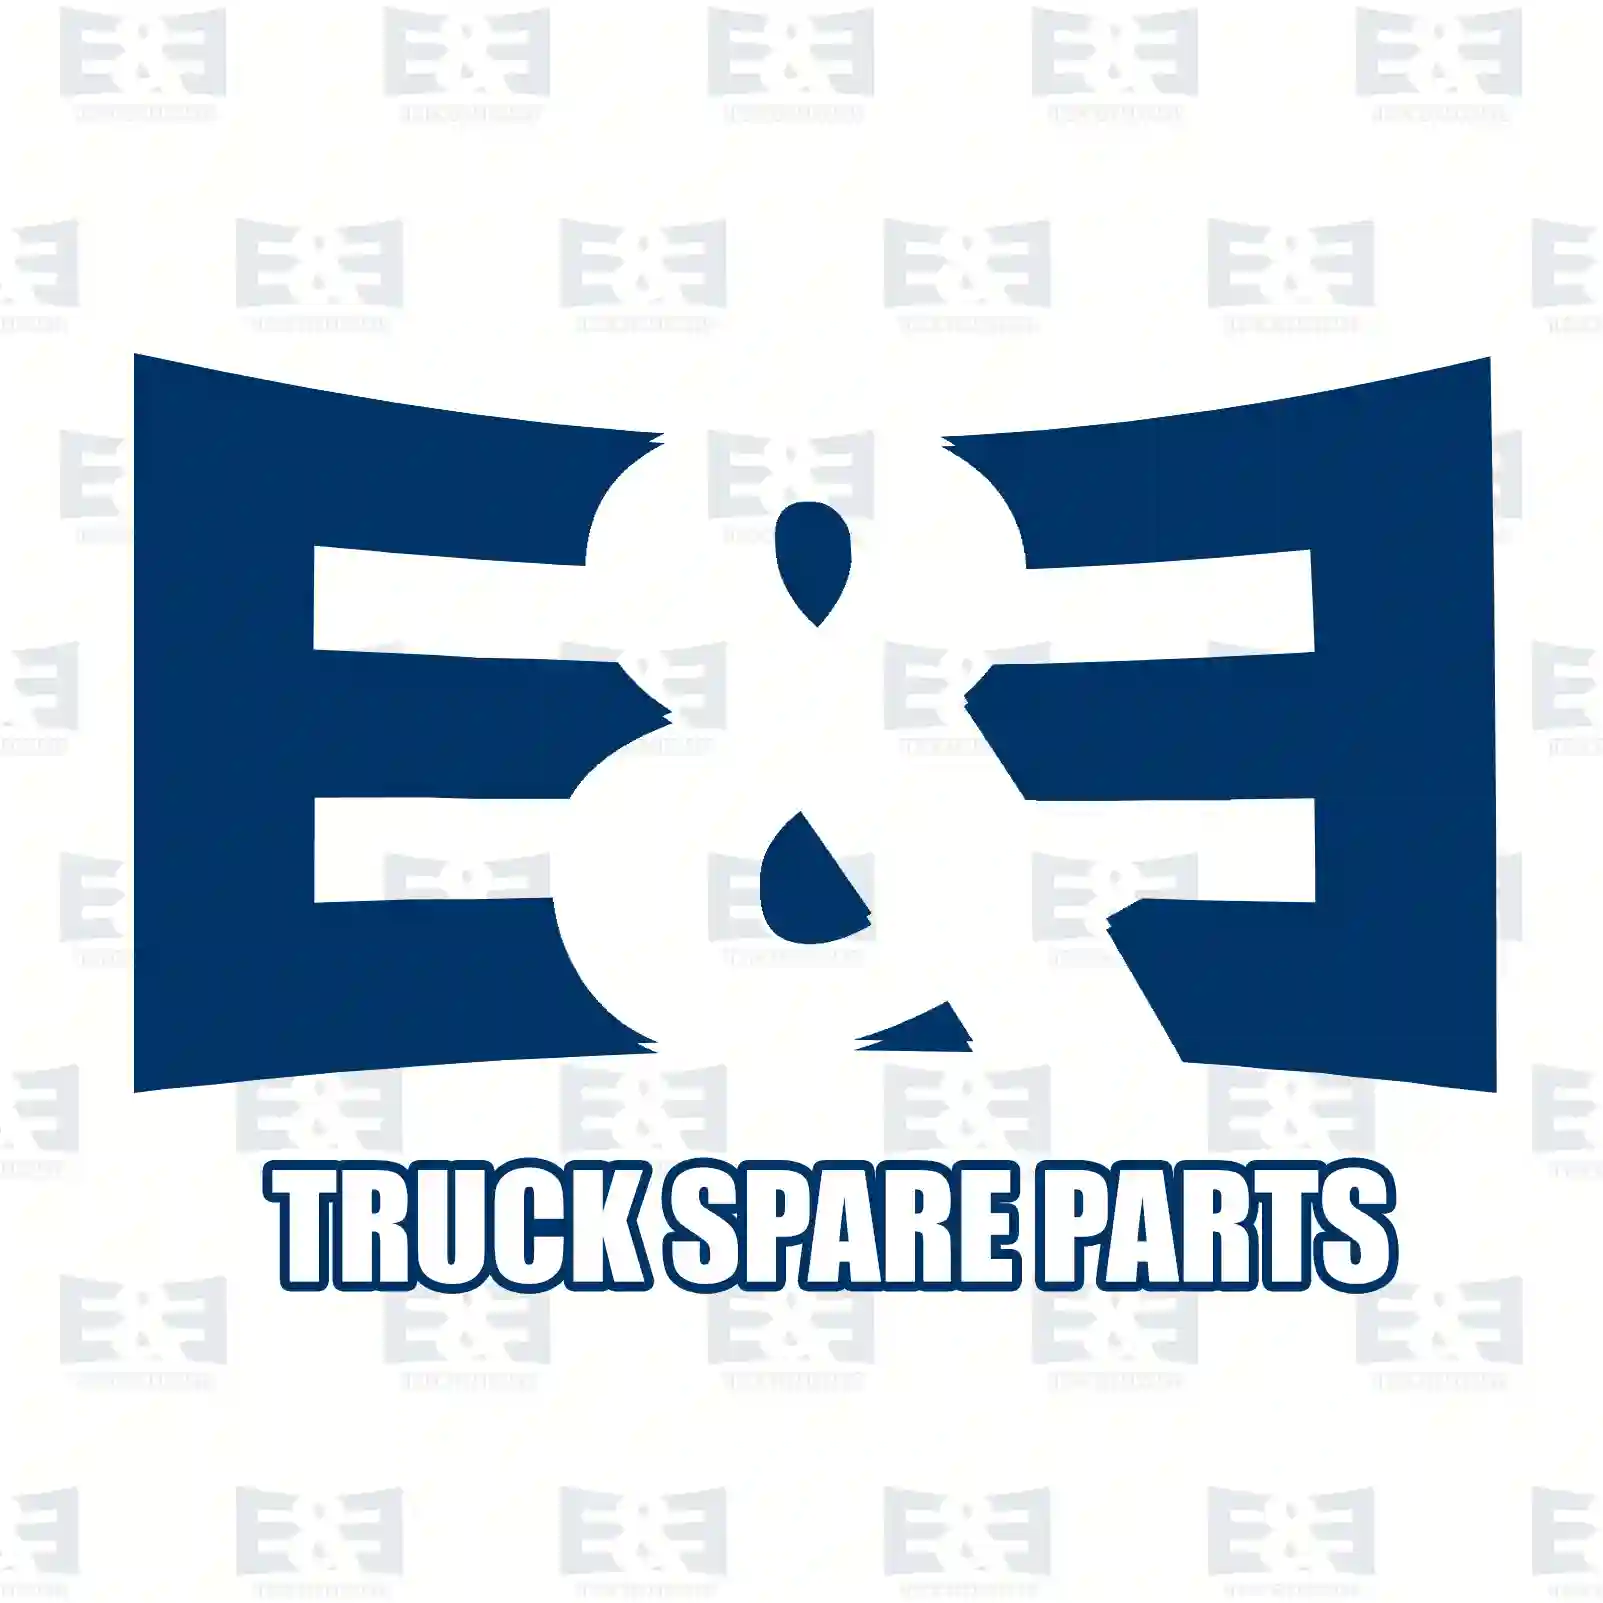 Oil seal, 2E2279466, 0996480054, N600000698522, 40100860, 0948380191, 124268, 1305712, 1528991, 1680726, 2262467, 2285573, 254274, 388728, 395210705, 395210706, ZG02601-0008 ||  2E2279466 E&E Truck Spare Parts | Truck Spare Parts, Auotomotive Spare Parts Oil seal, 2E2279466, 0996480054, N600000698522, 40100860, 0948380191, 124268, 1305712, 1528991, 1680726, 2262467, 2285573, 254274, 388728, 395210705, 395210706, ZG02601-0008 ||  2E2279466 E&E Truck Spare Parts | Truck Spare Parts, Auotomotive Spare Parts